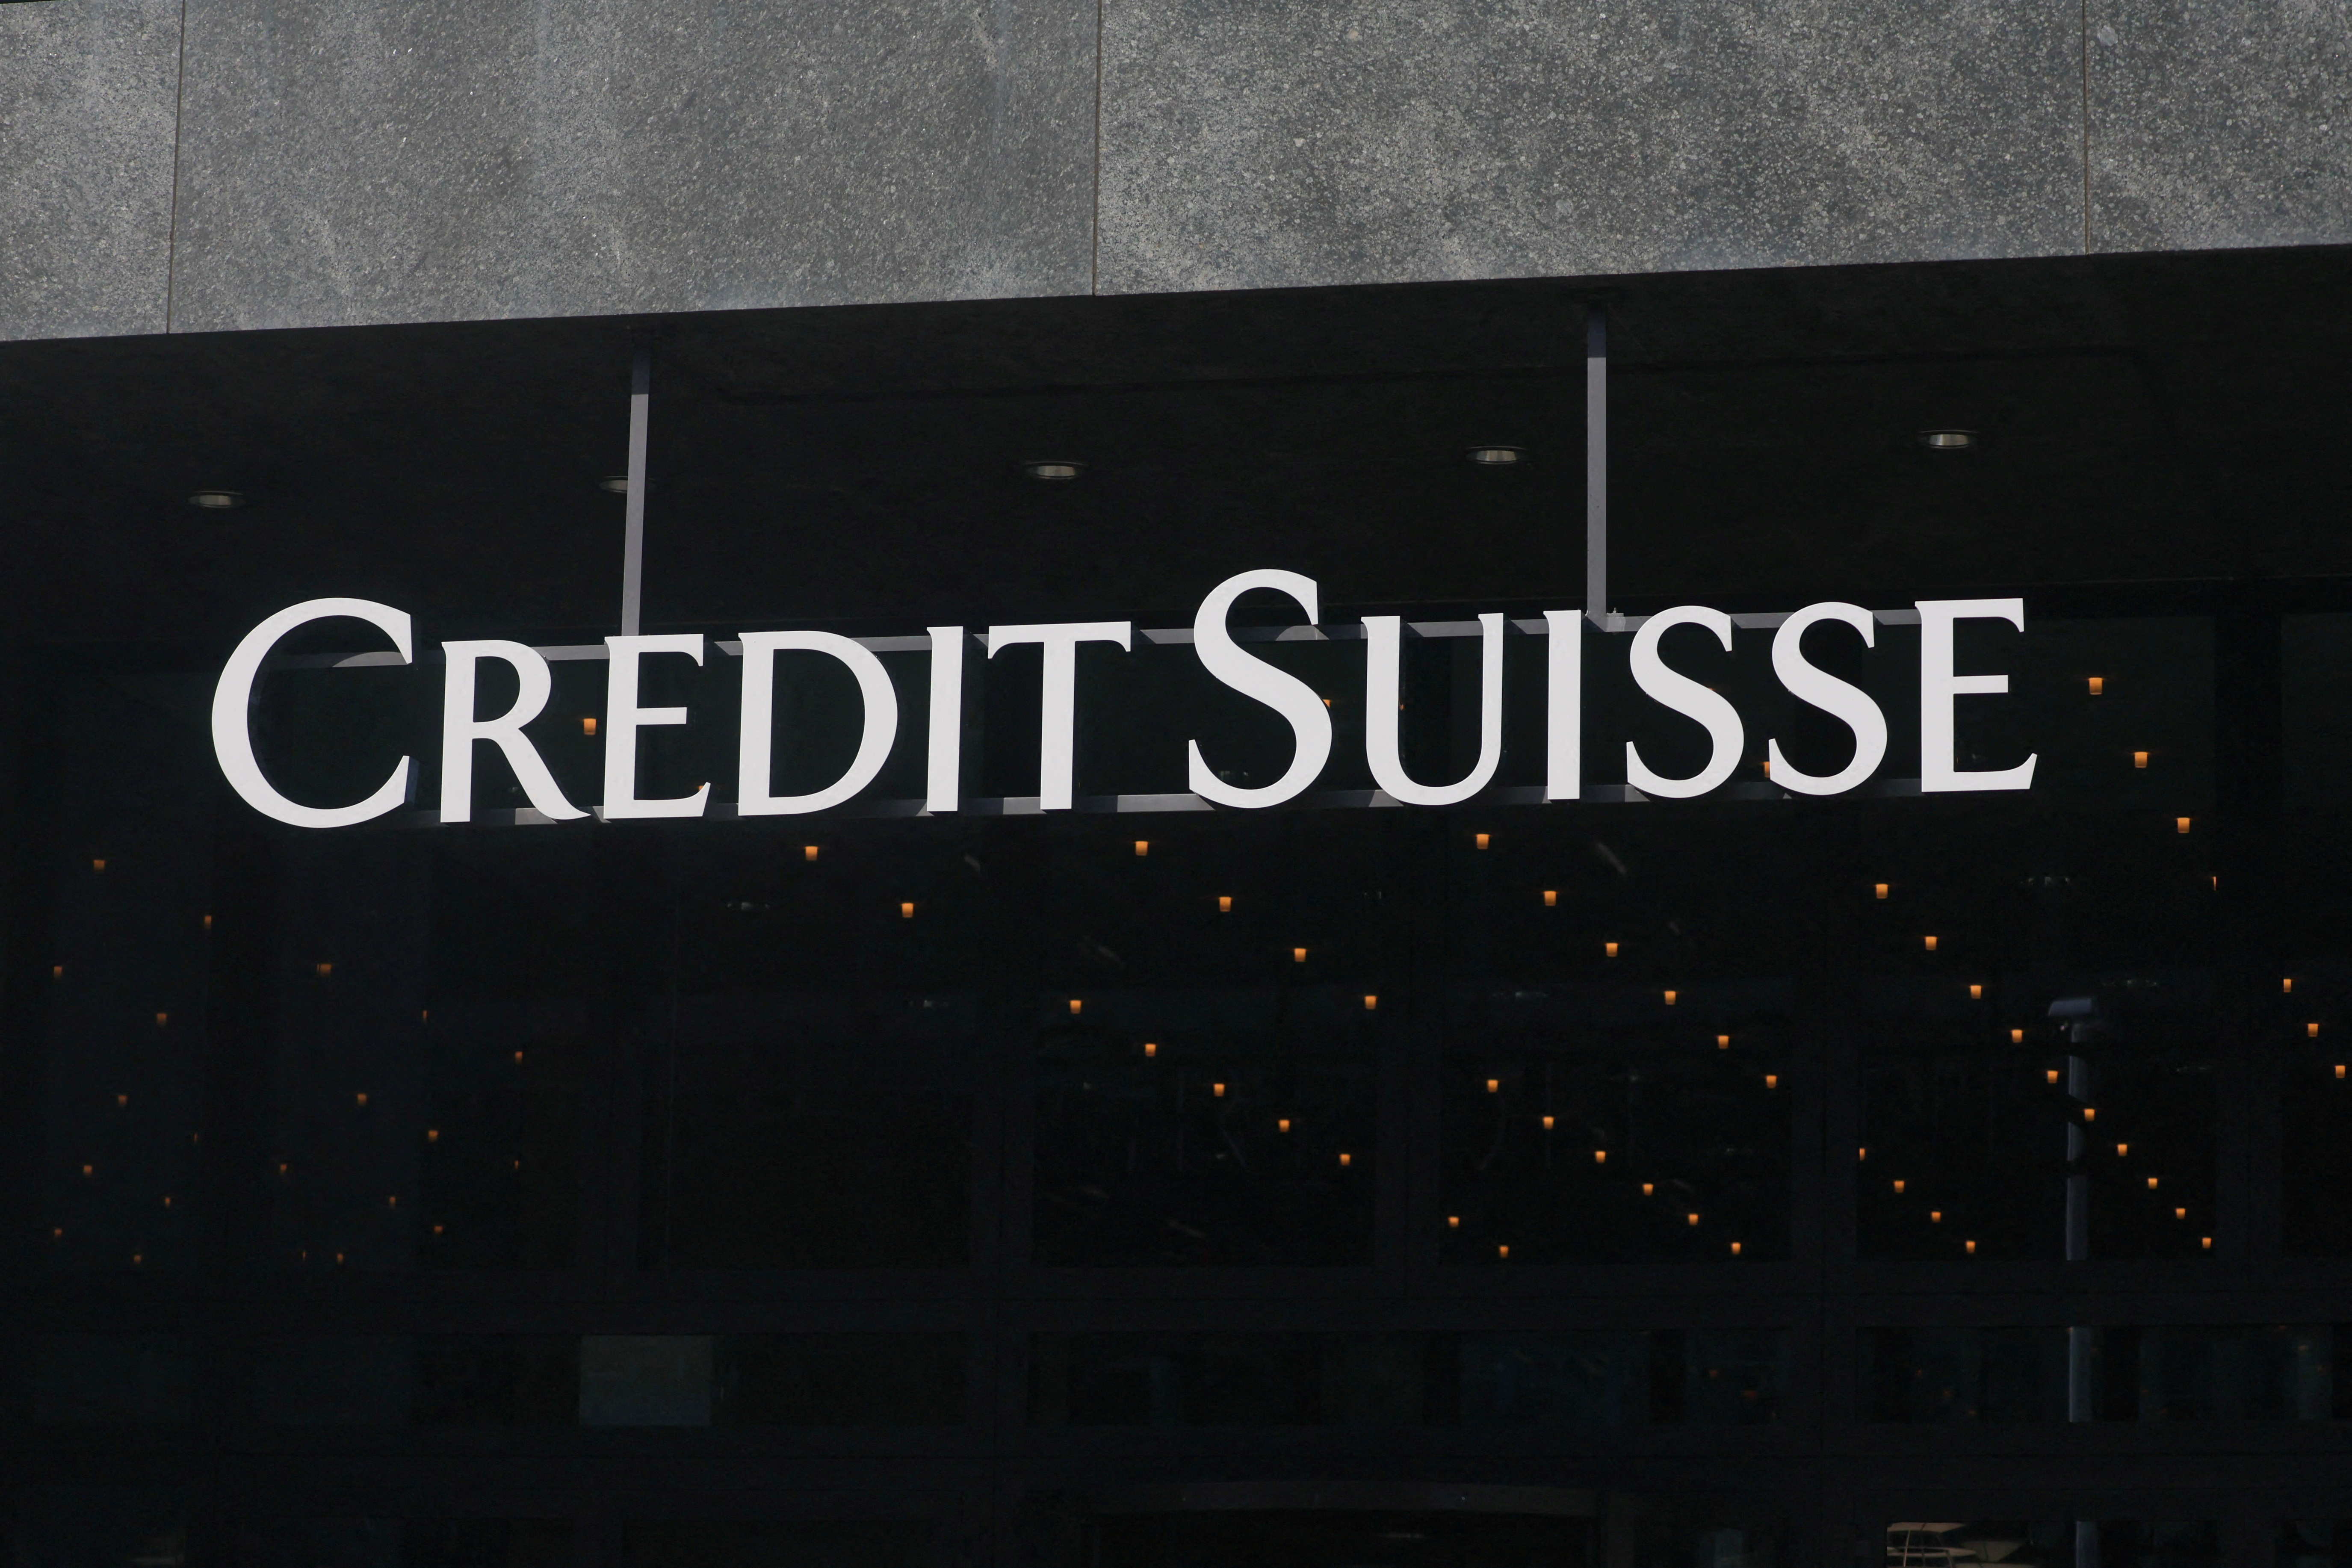 Credit Suisse arrastraba su propia crisis desde hace tiempo, pero el nuevo celo de los inversores a la hora de analizar bancos hizo que fuera uno de los más golpeados (Reuters)